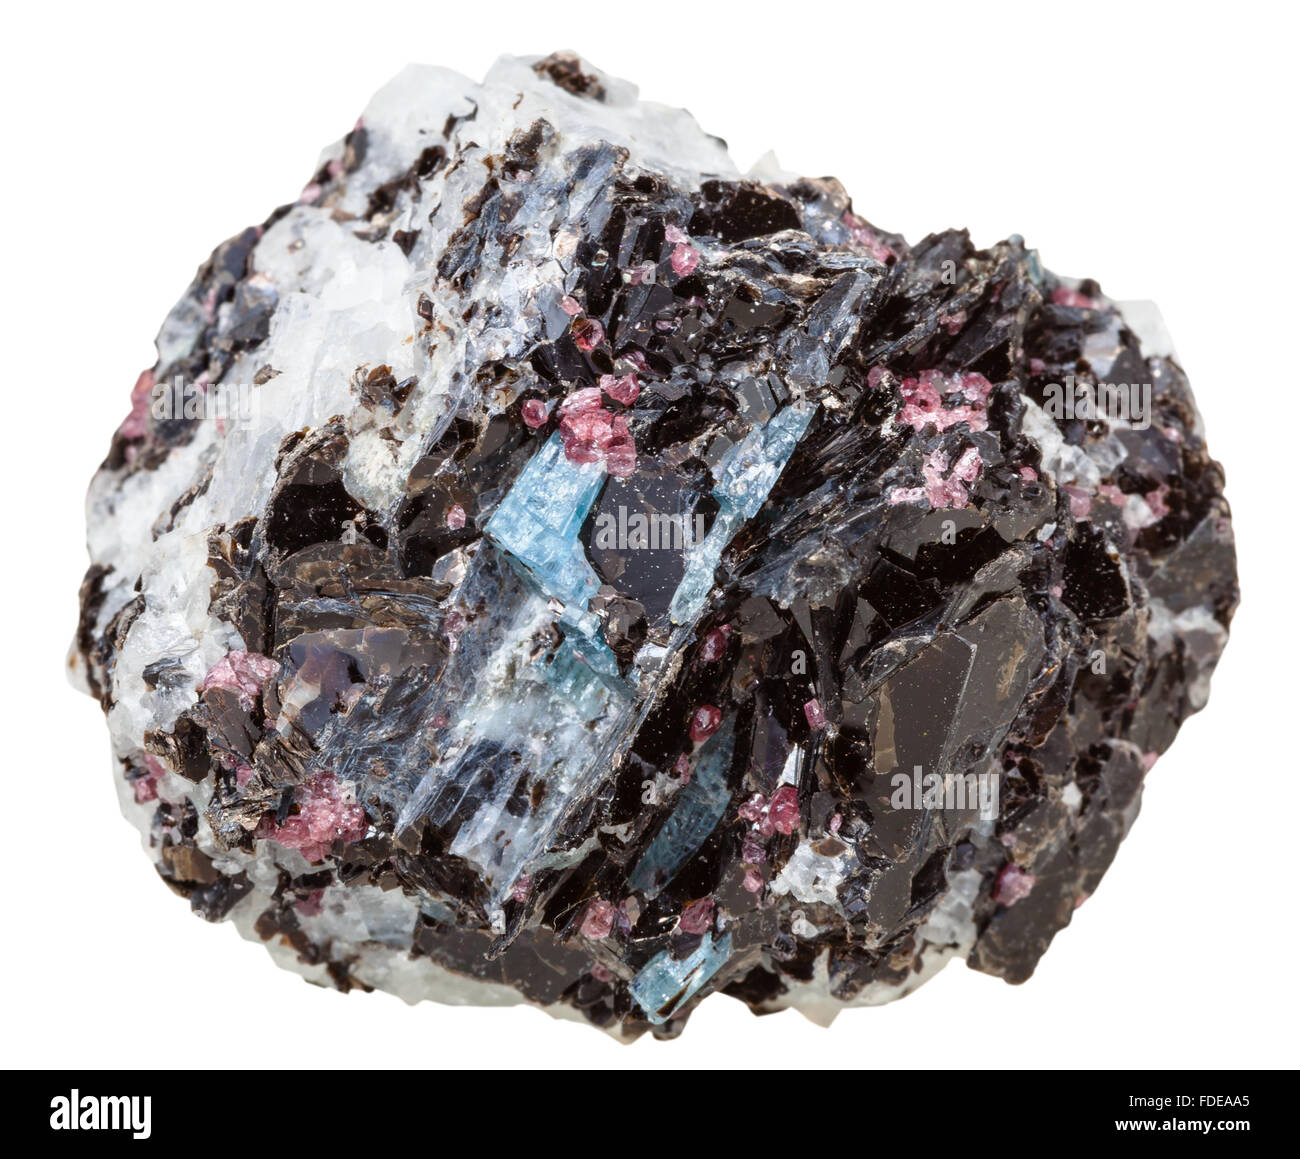 Makroaufnahmen der Kollektion natürliche rock - Gneis Rock mit blauen Kyanit, brauner Biotit, rosa Turmalin Kristalle Mineral Stein Stockfoto